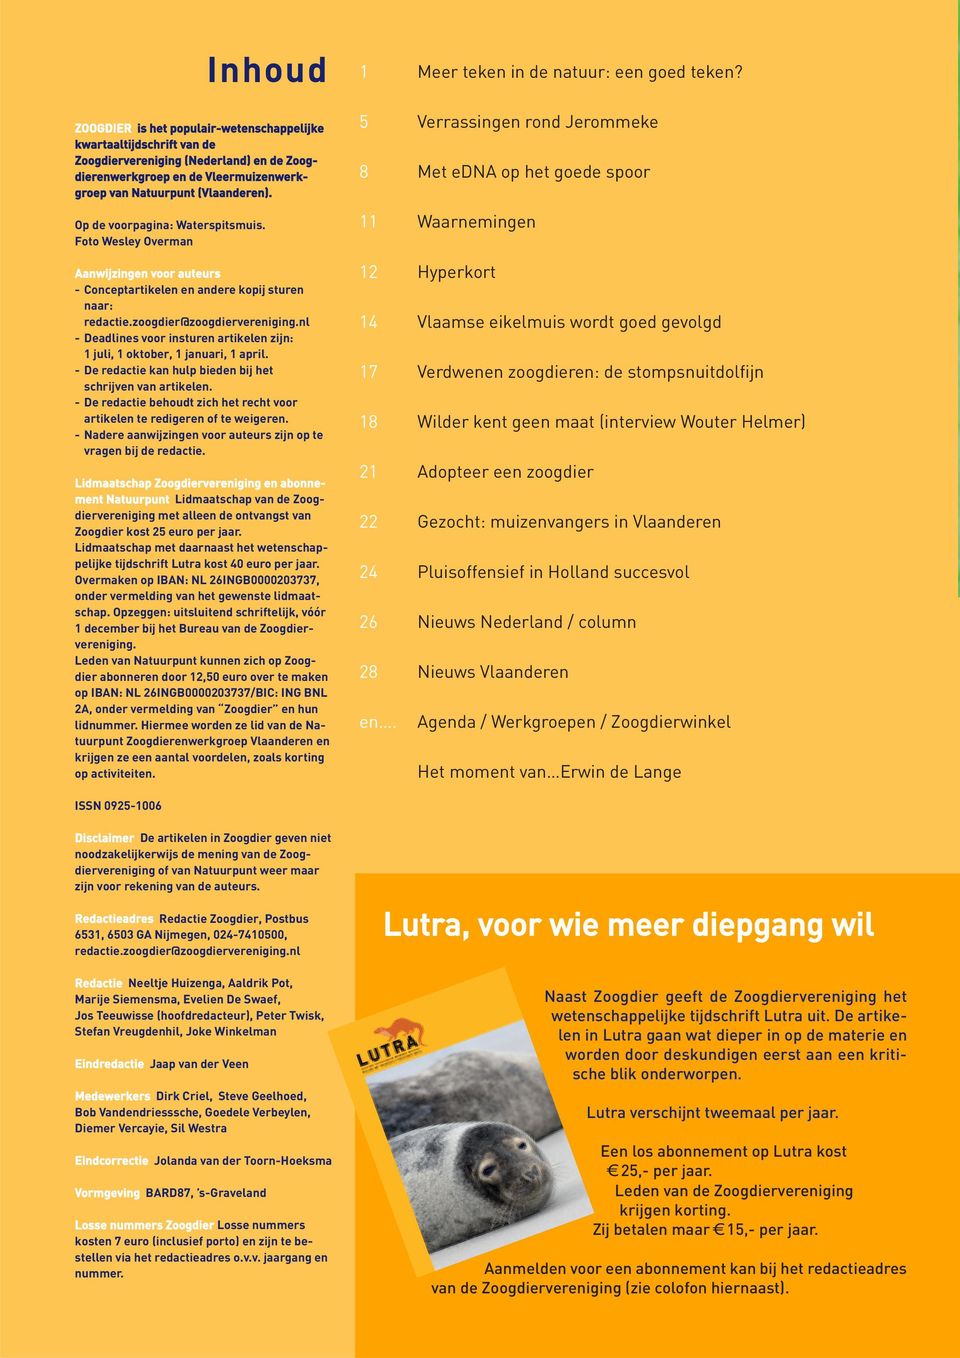 nl - Deadlines voor insturen artikelen zijn: 1 juli, 1 oktober, 1 januari, 1 april. - De redactie kan hulp bieden bij het schrijven van artikelen.